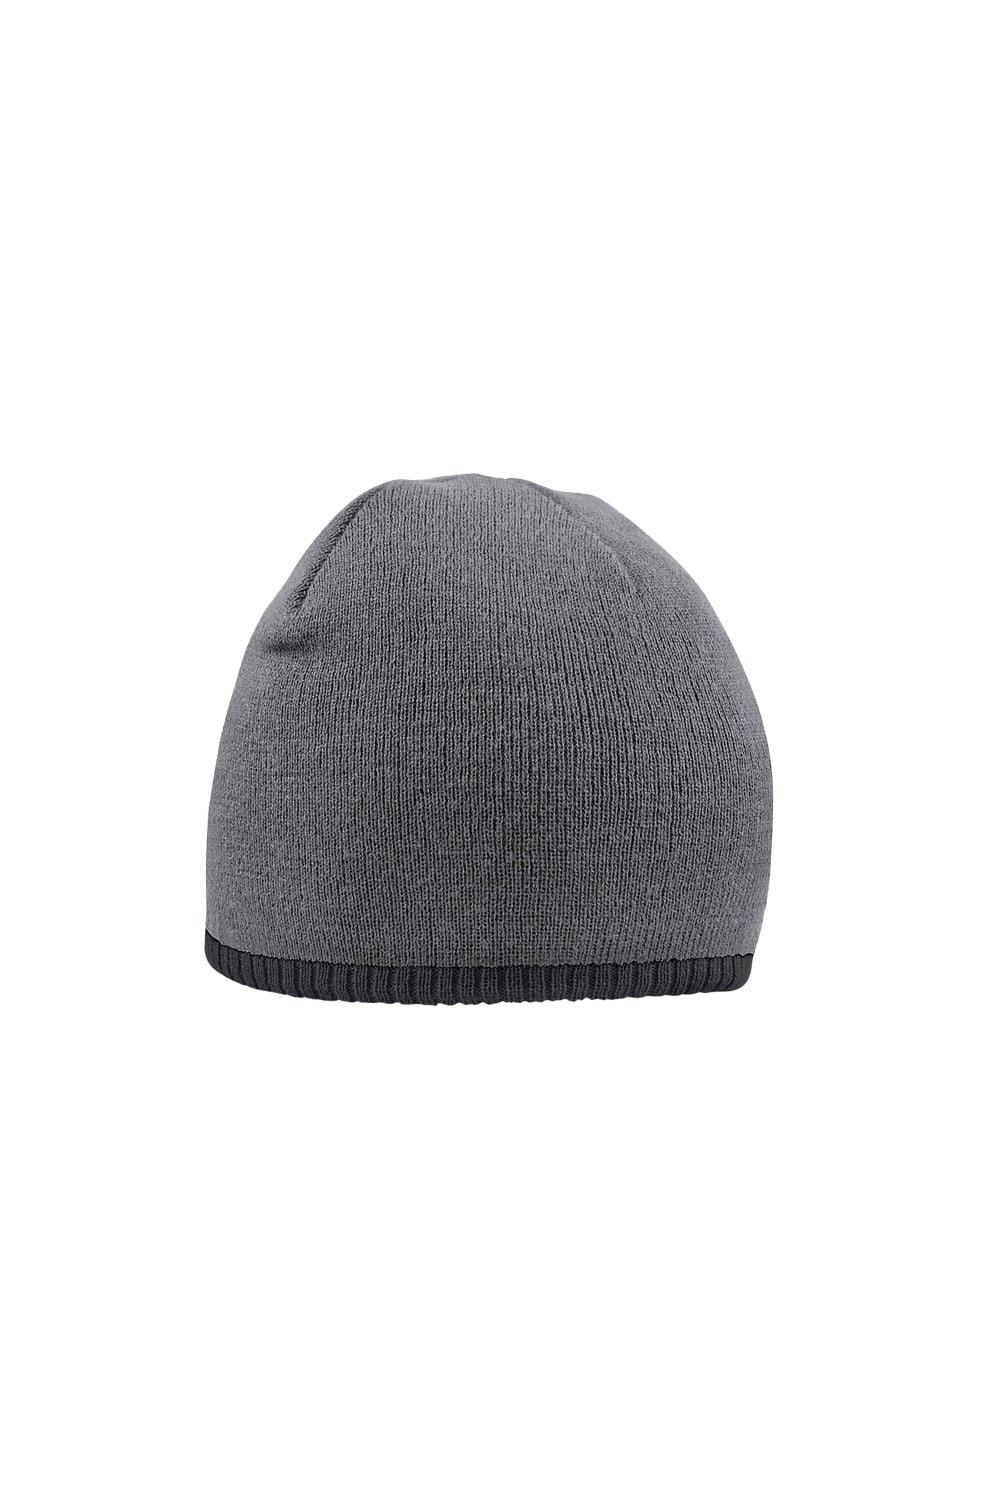 Двухцветная вязаная шапка Beechfield, серый двухцветная вязаная шапка sevenext